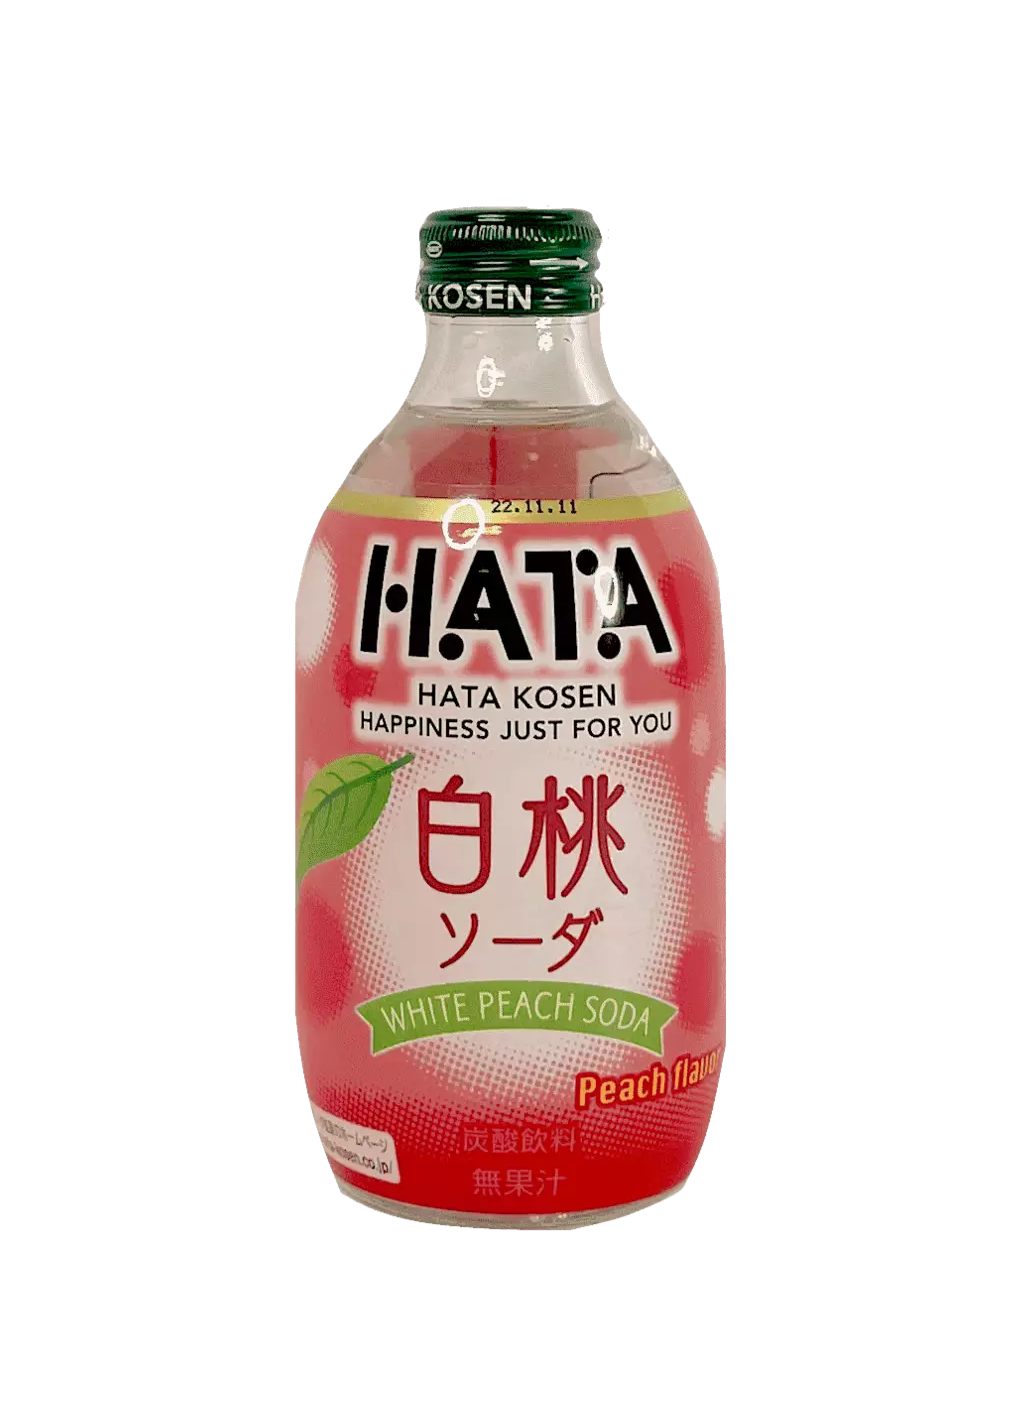 苏打饮料 水蜜桃风味 300ml Hata Kosen 日本